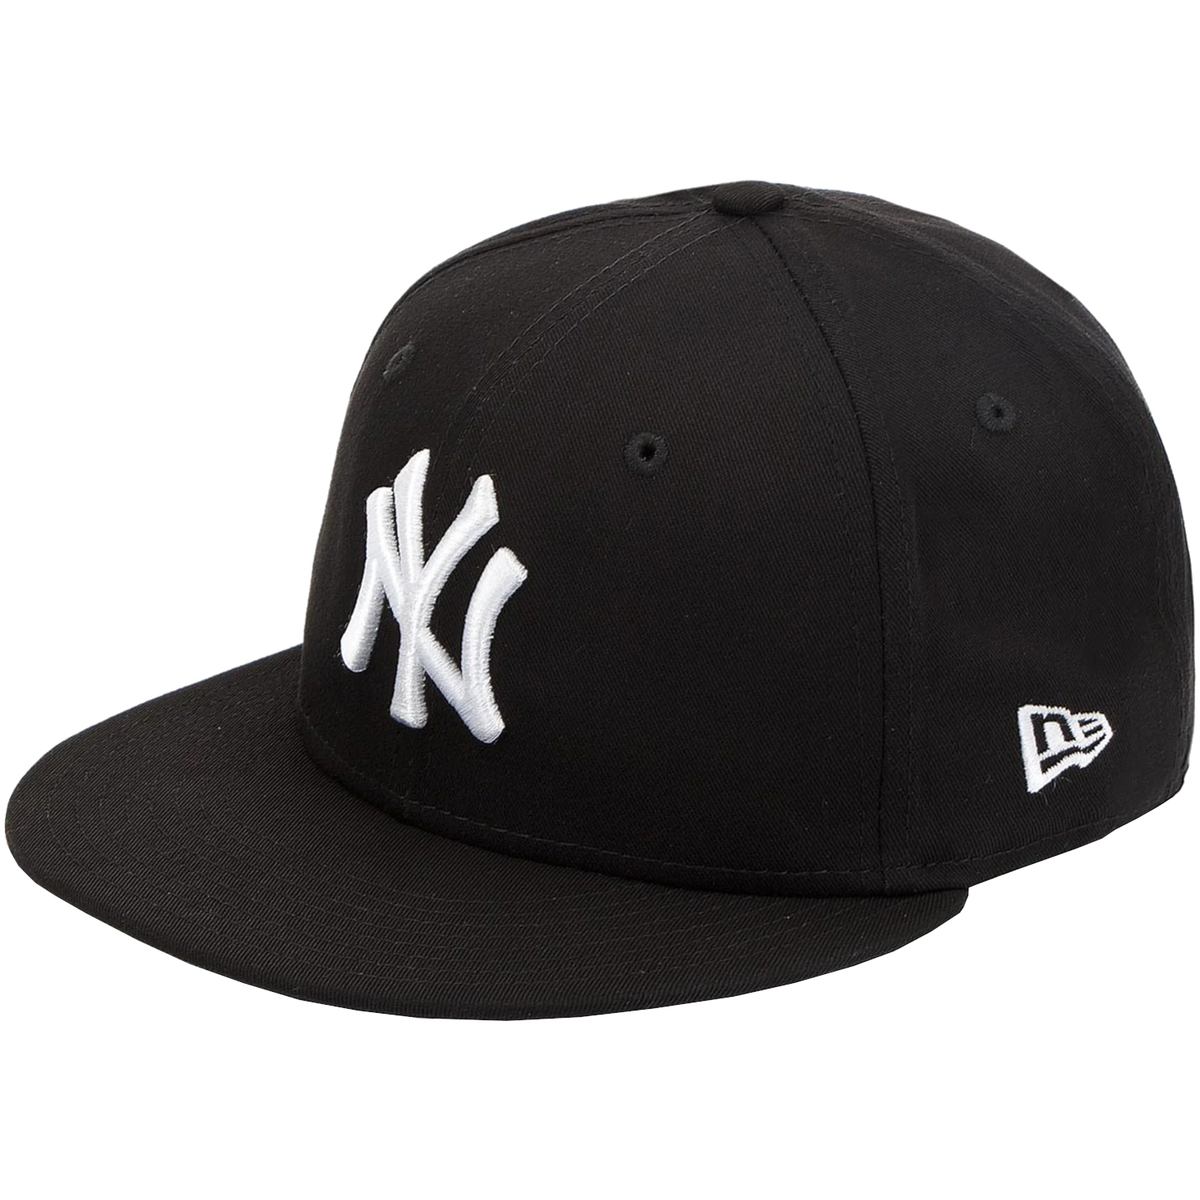 Κασκέτο New-Era 9FIFTY MLB New York Yankees Cap